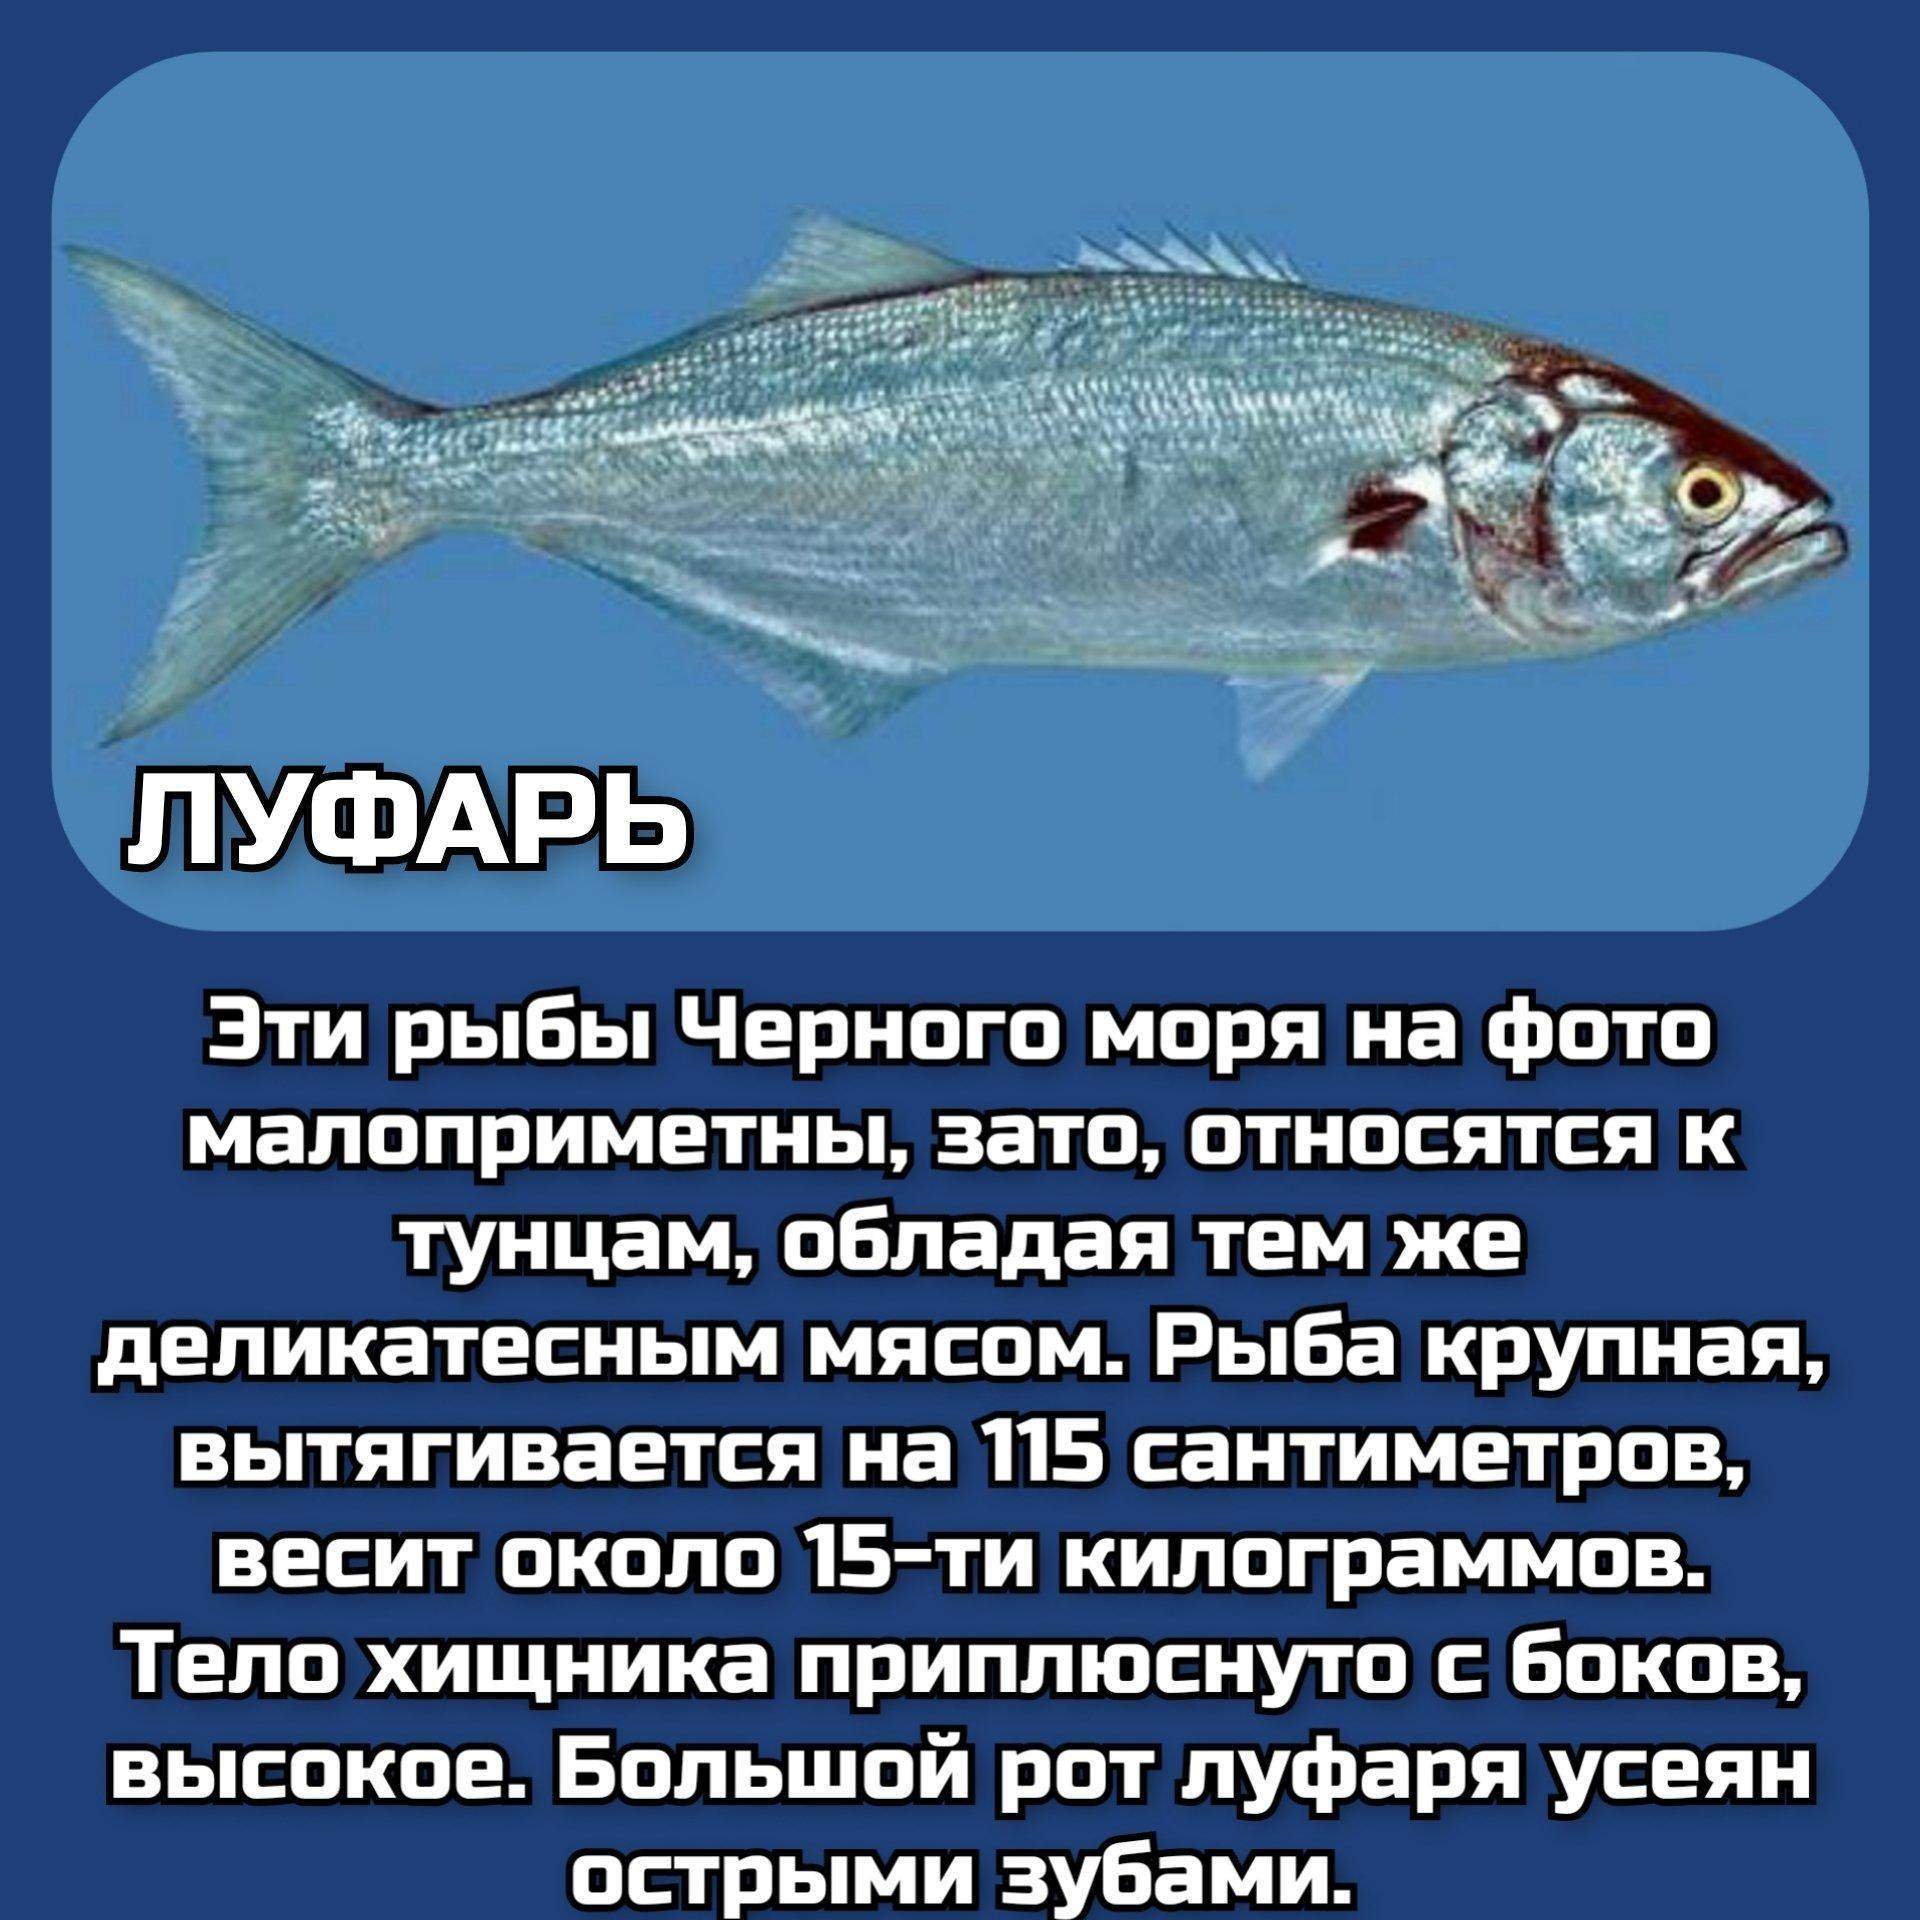 виды рыб балтийского моря